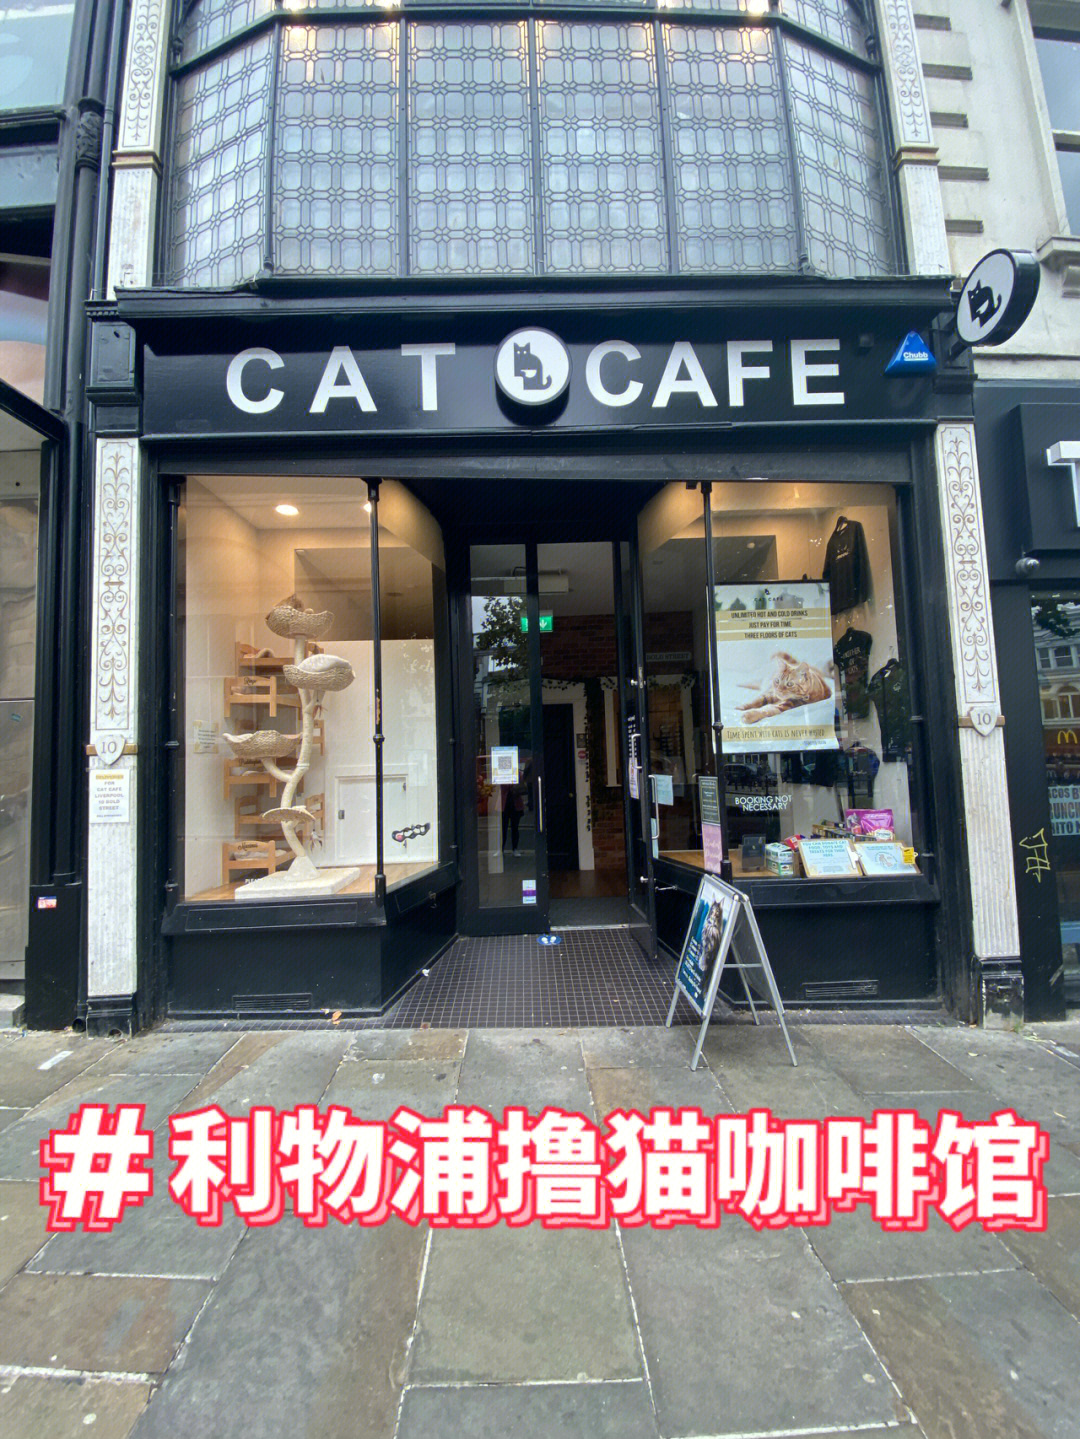 利物浦探店偶遇可爱撸猫咖啡馆catcafe